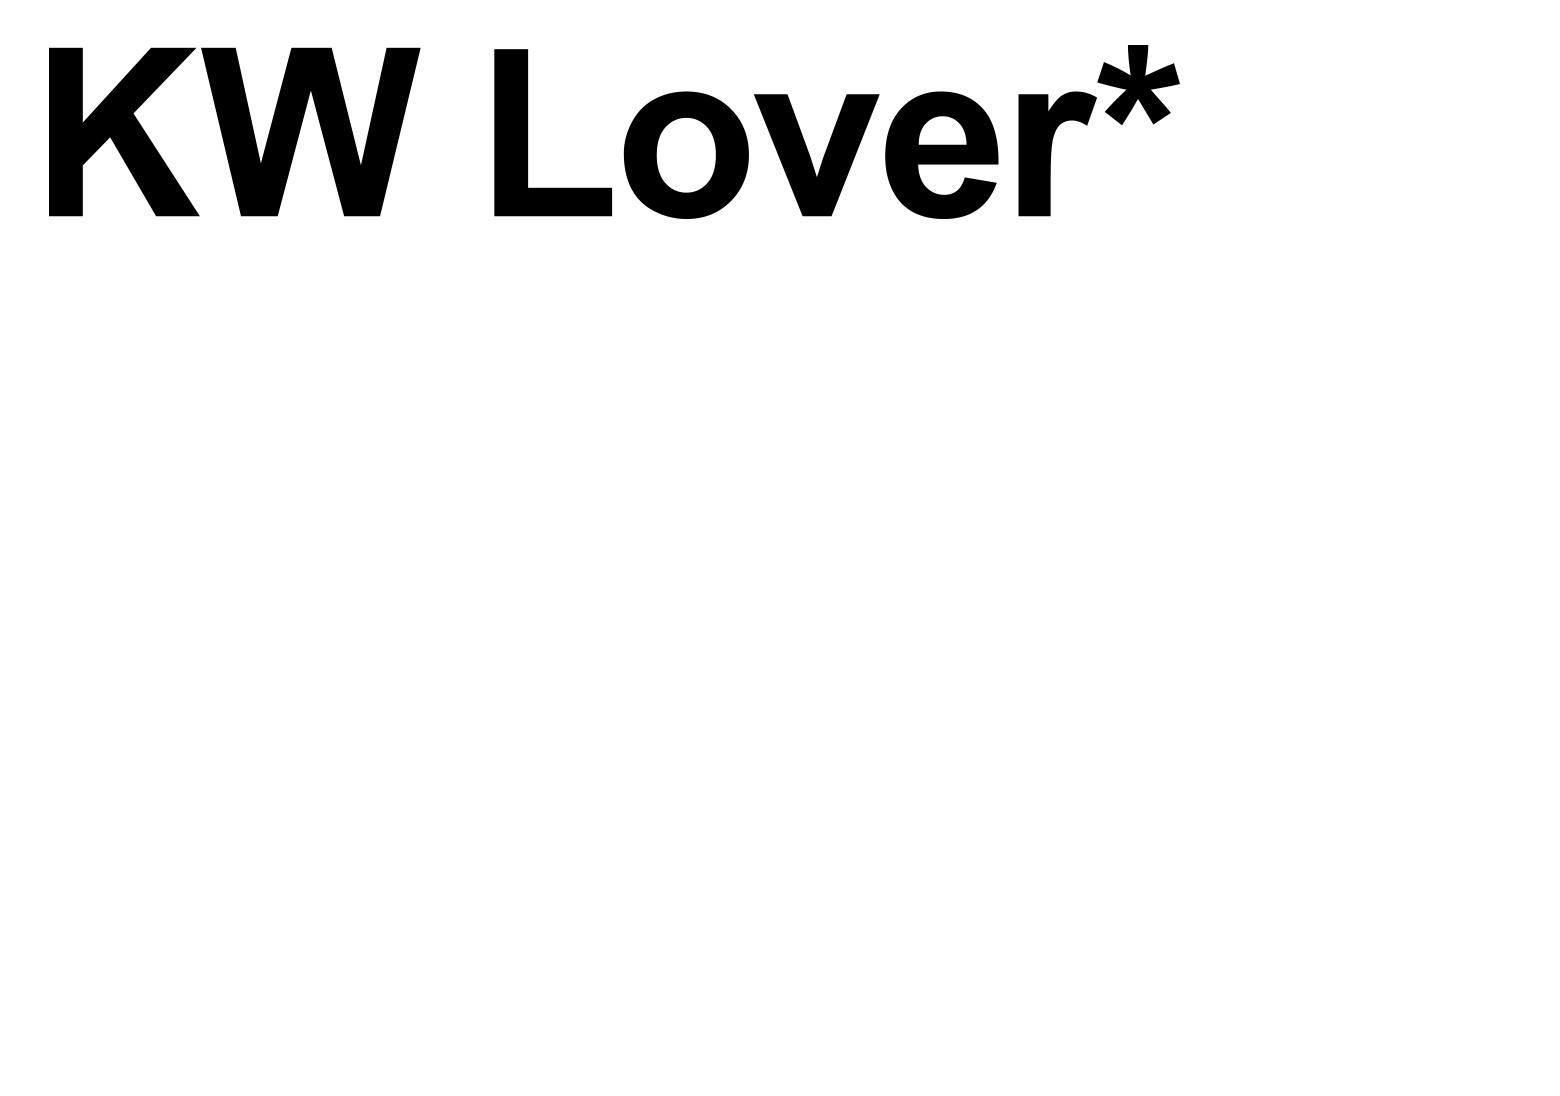 KW Lover regulär*